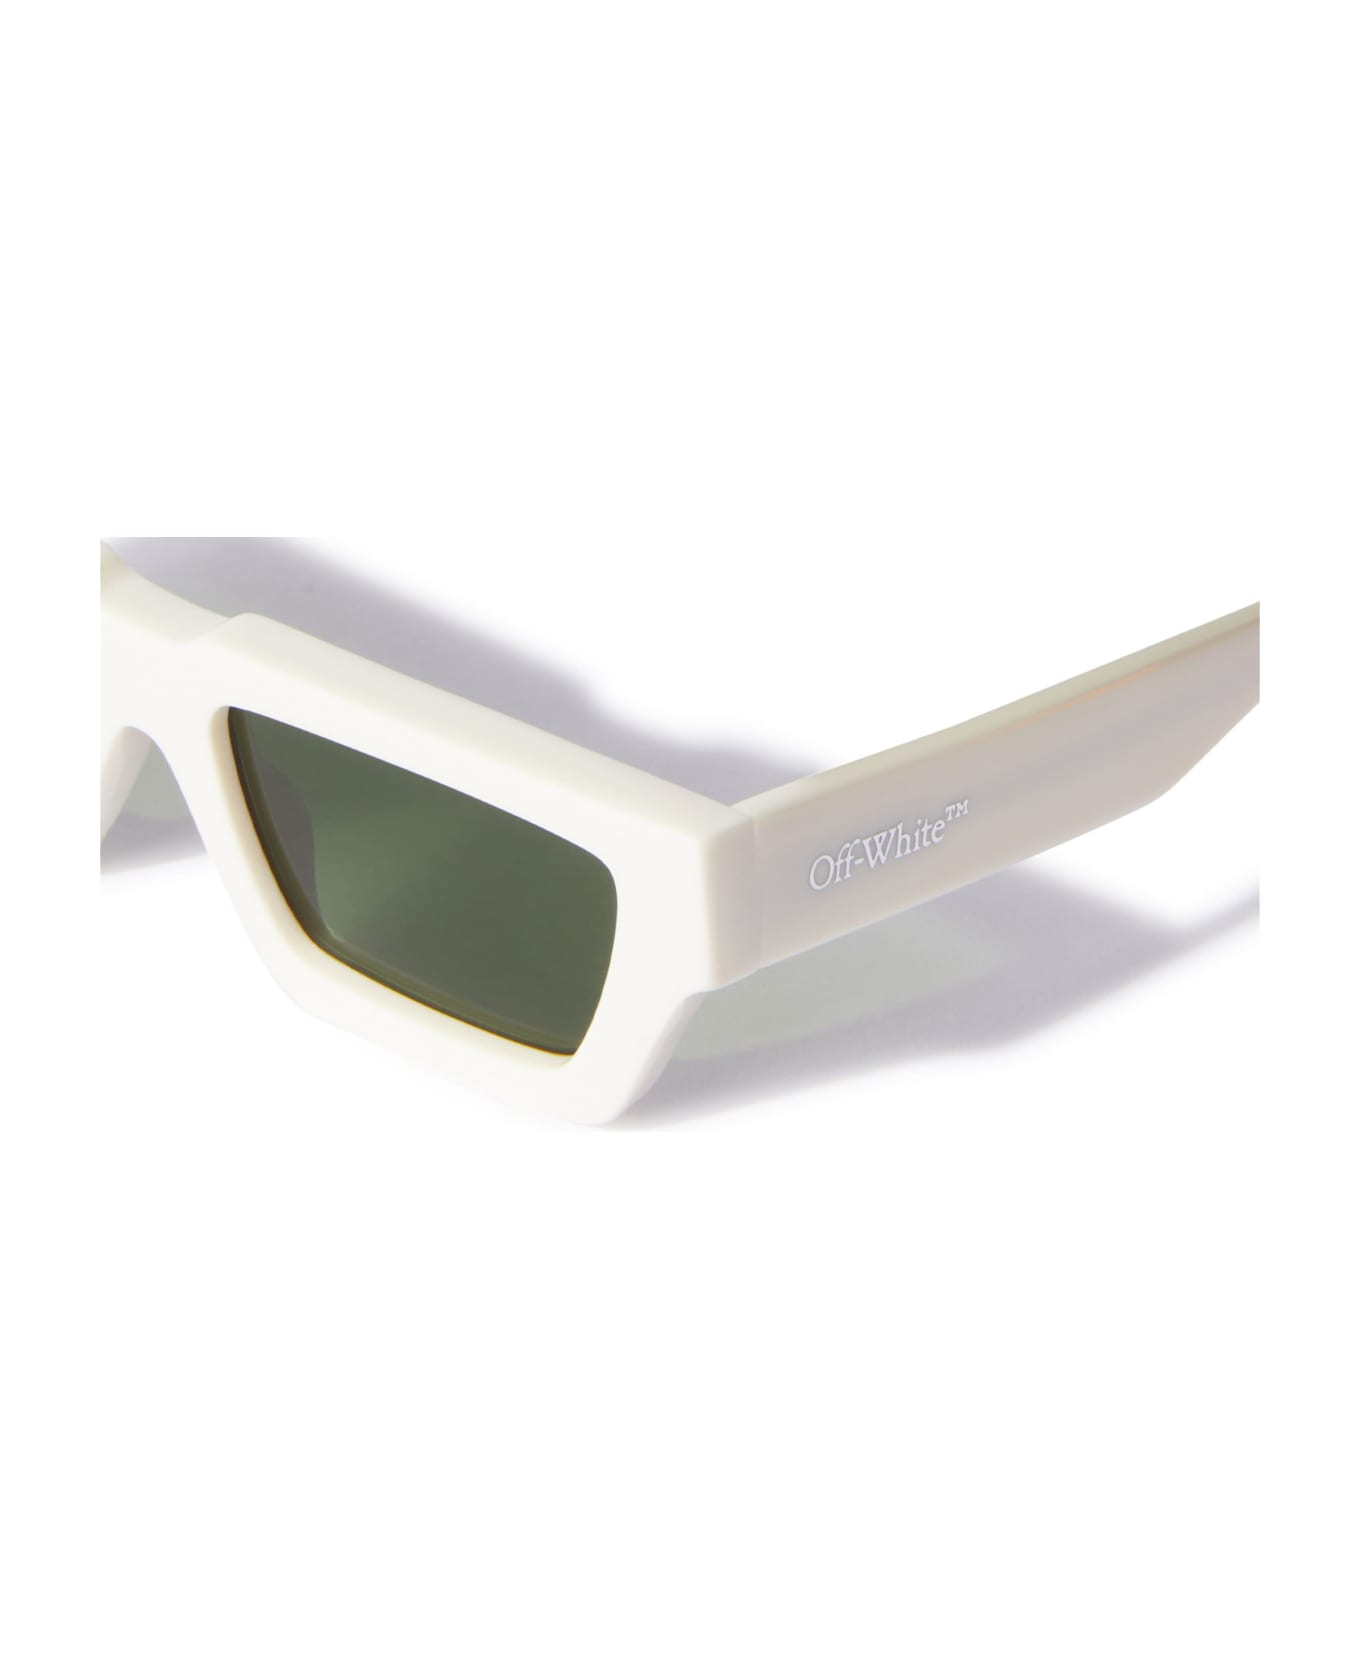 Off-White Manchester - White / Green Sunglasses - White サングラス